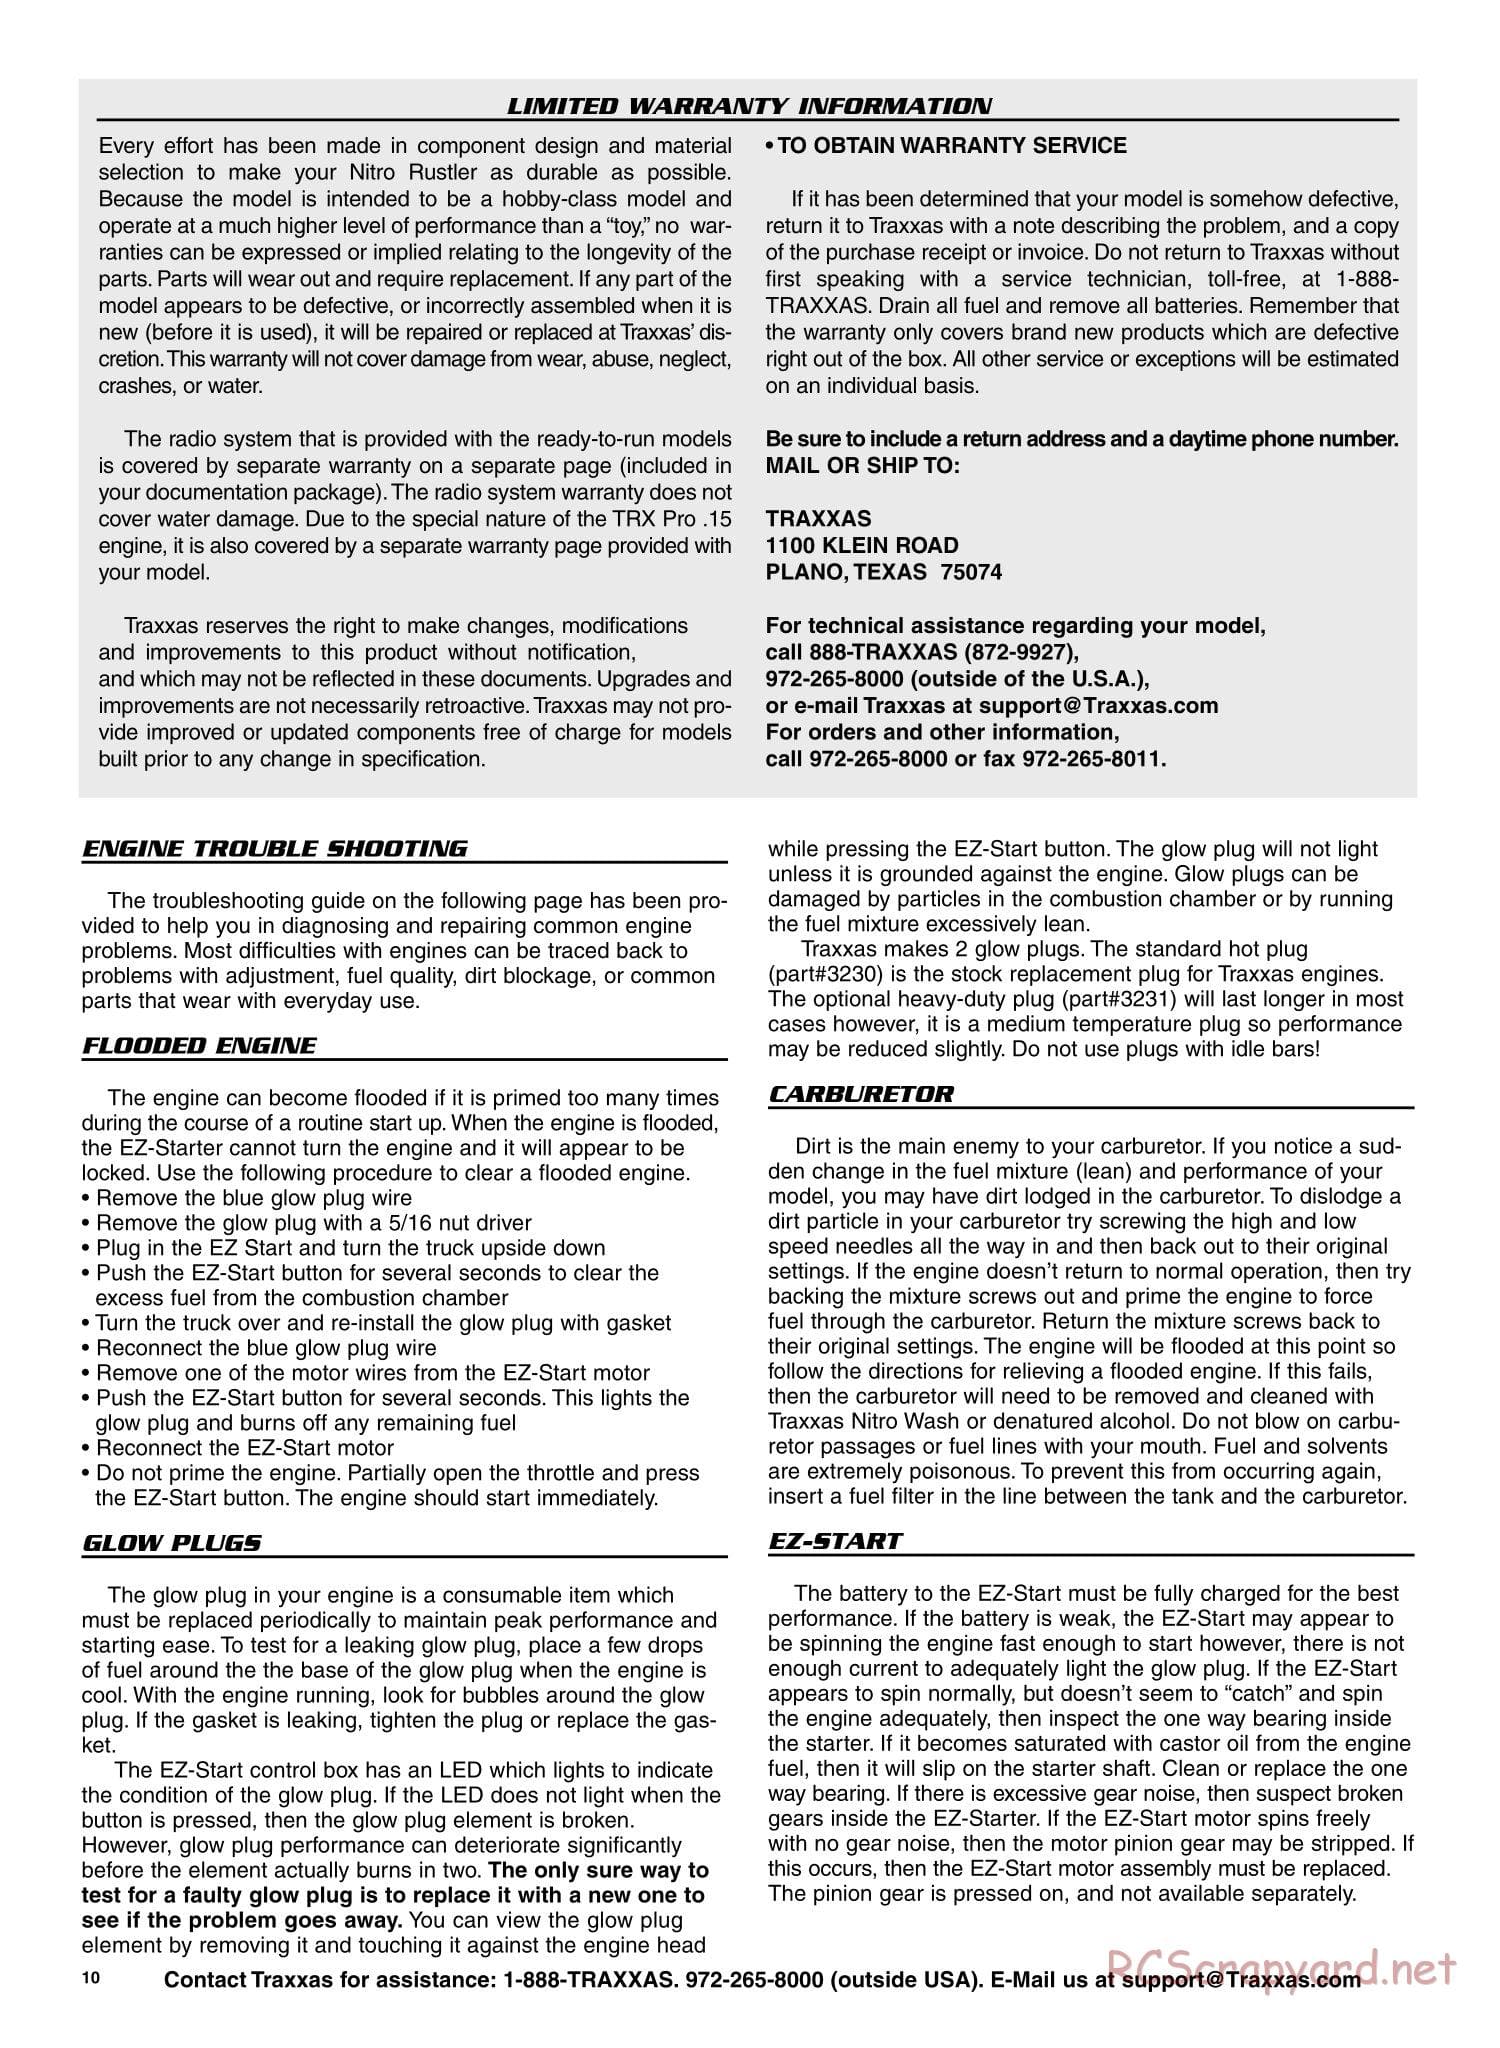 Traxxas - Nitro Rustler - Manual - Page 10